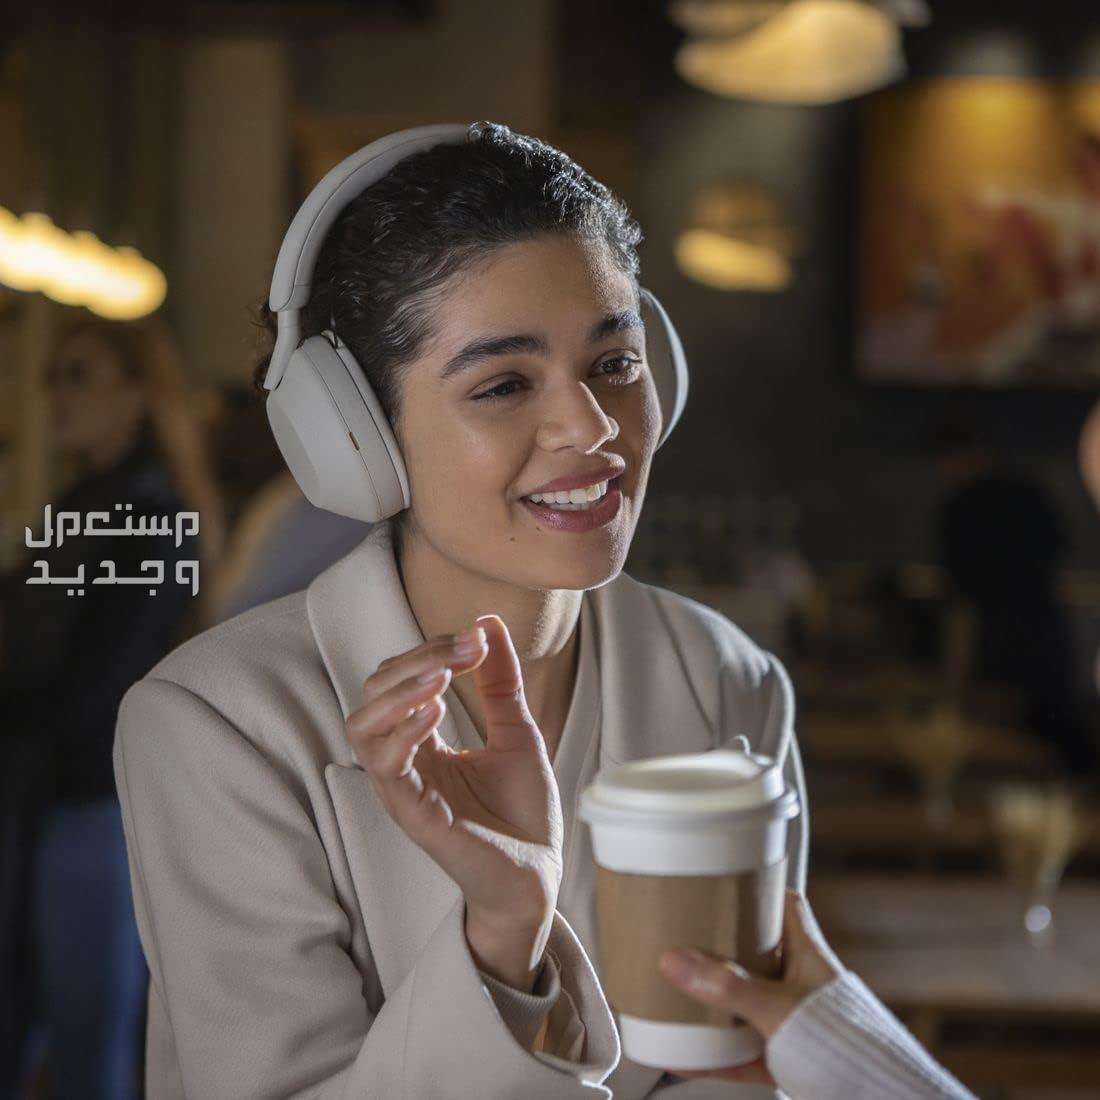 سماعة سوني 5 بتقنية إلغاء الضوضاء المطوّرة  السعر والمميزات الفائقة في السعودية سماعة سوني 5 جودة مكالمات رائدة